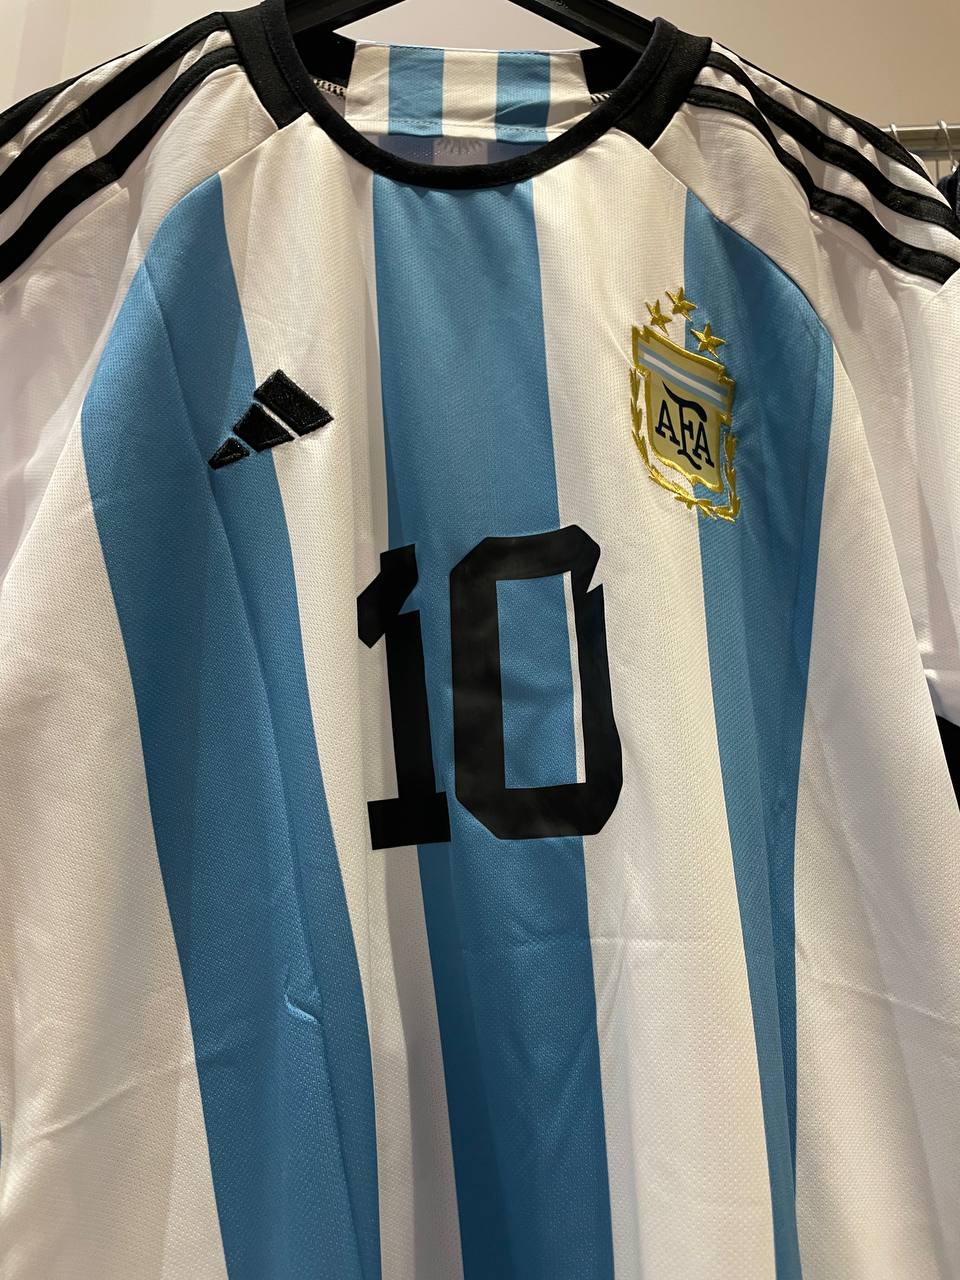 Messi x Argentina